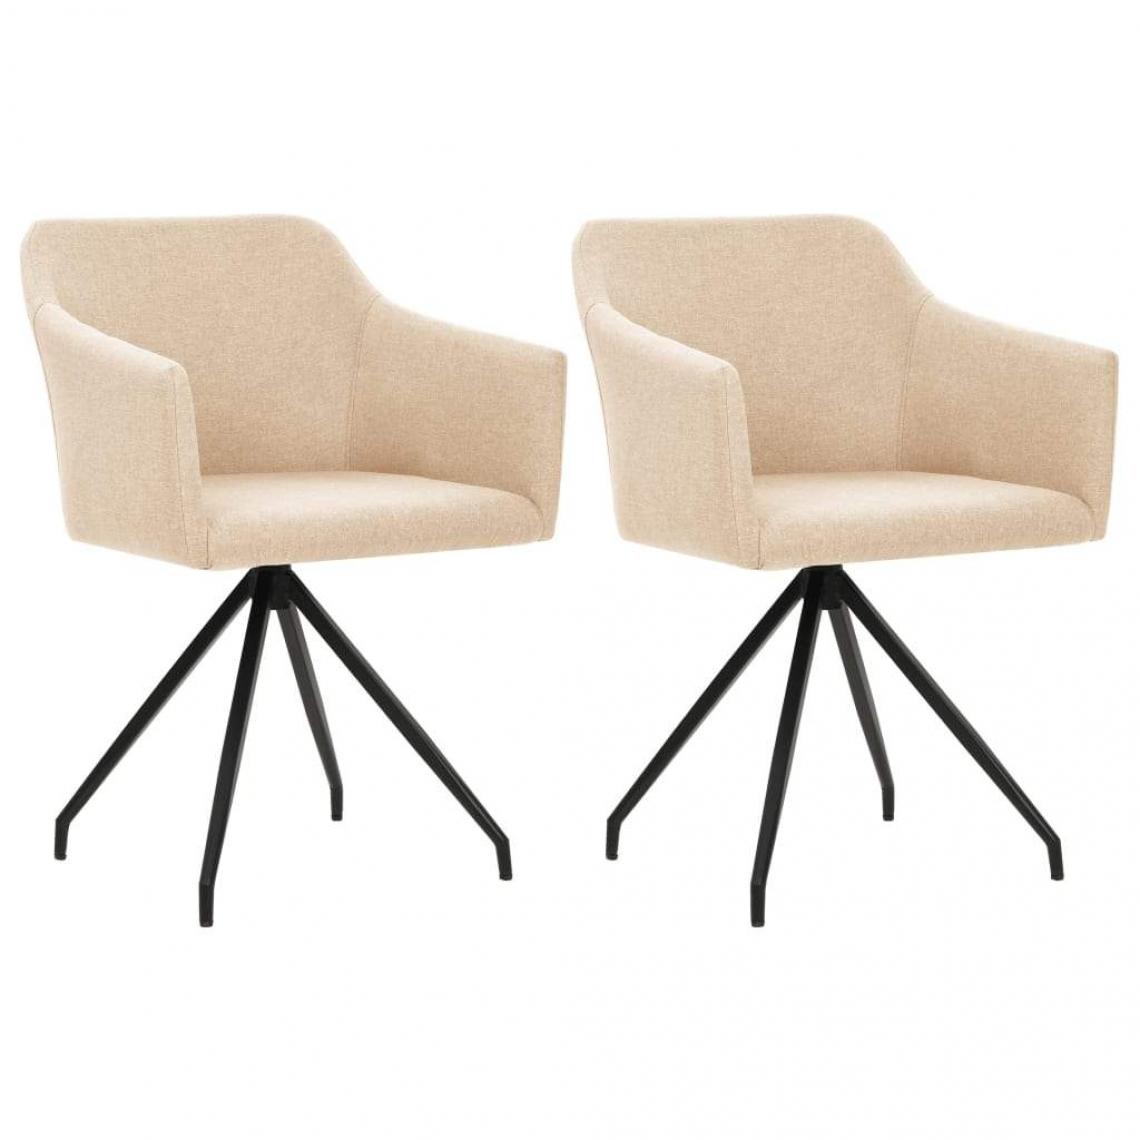 Decoshop26 - Lot de 2 chaises de salle à manger cuisine design moderne tissu crème CDS020430 - Chaises